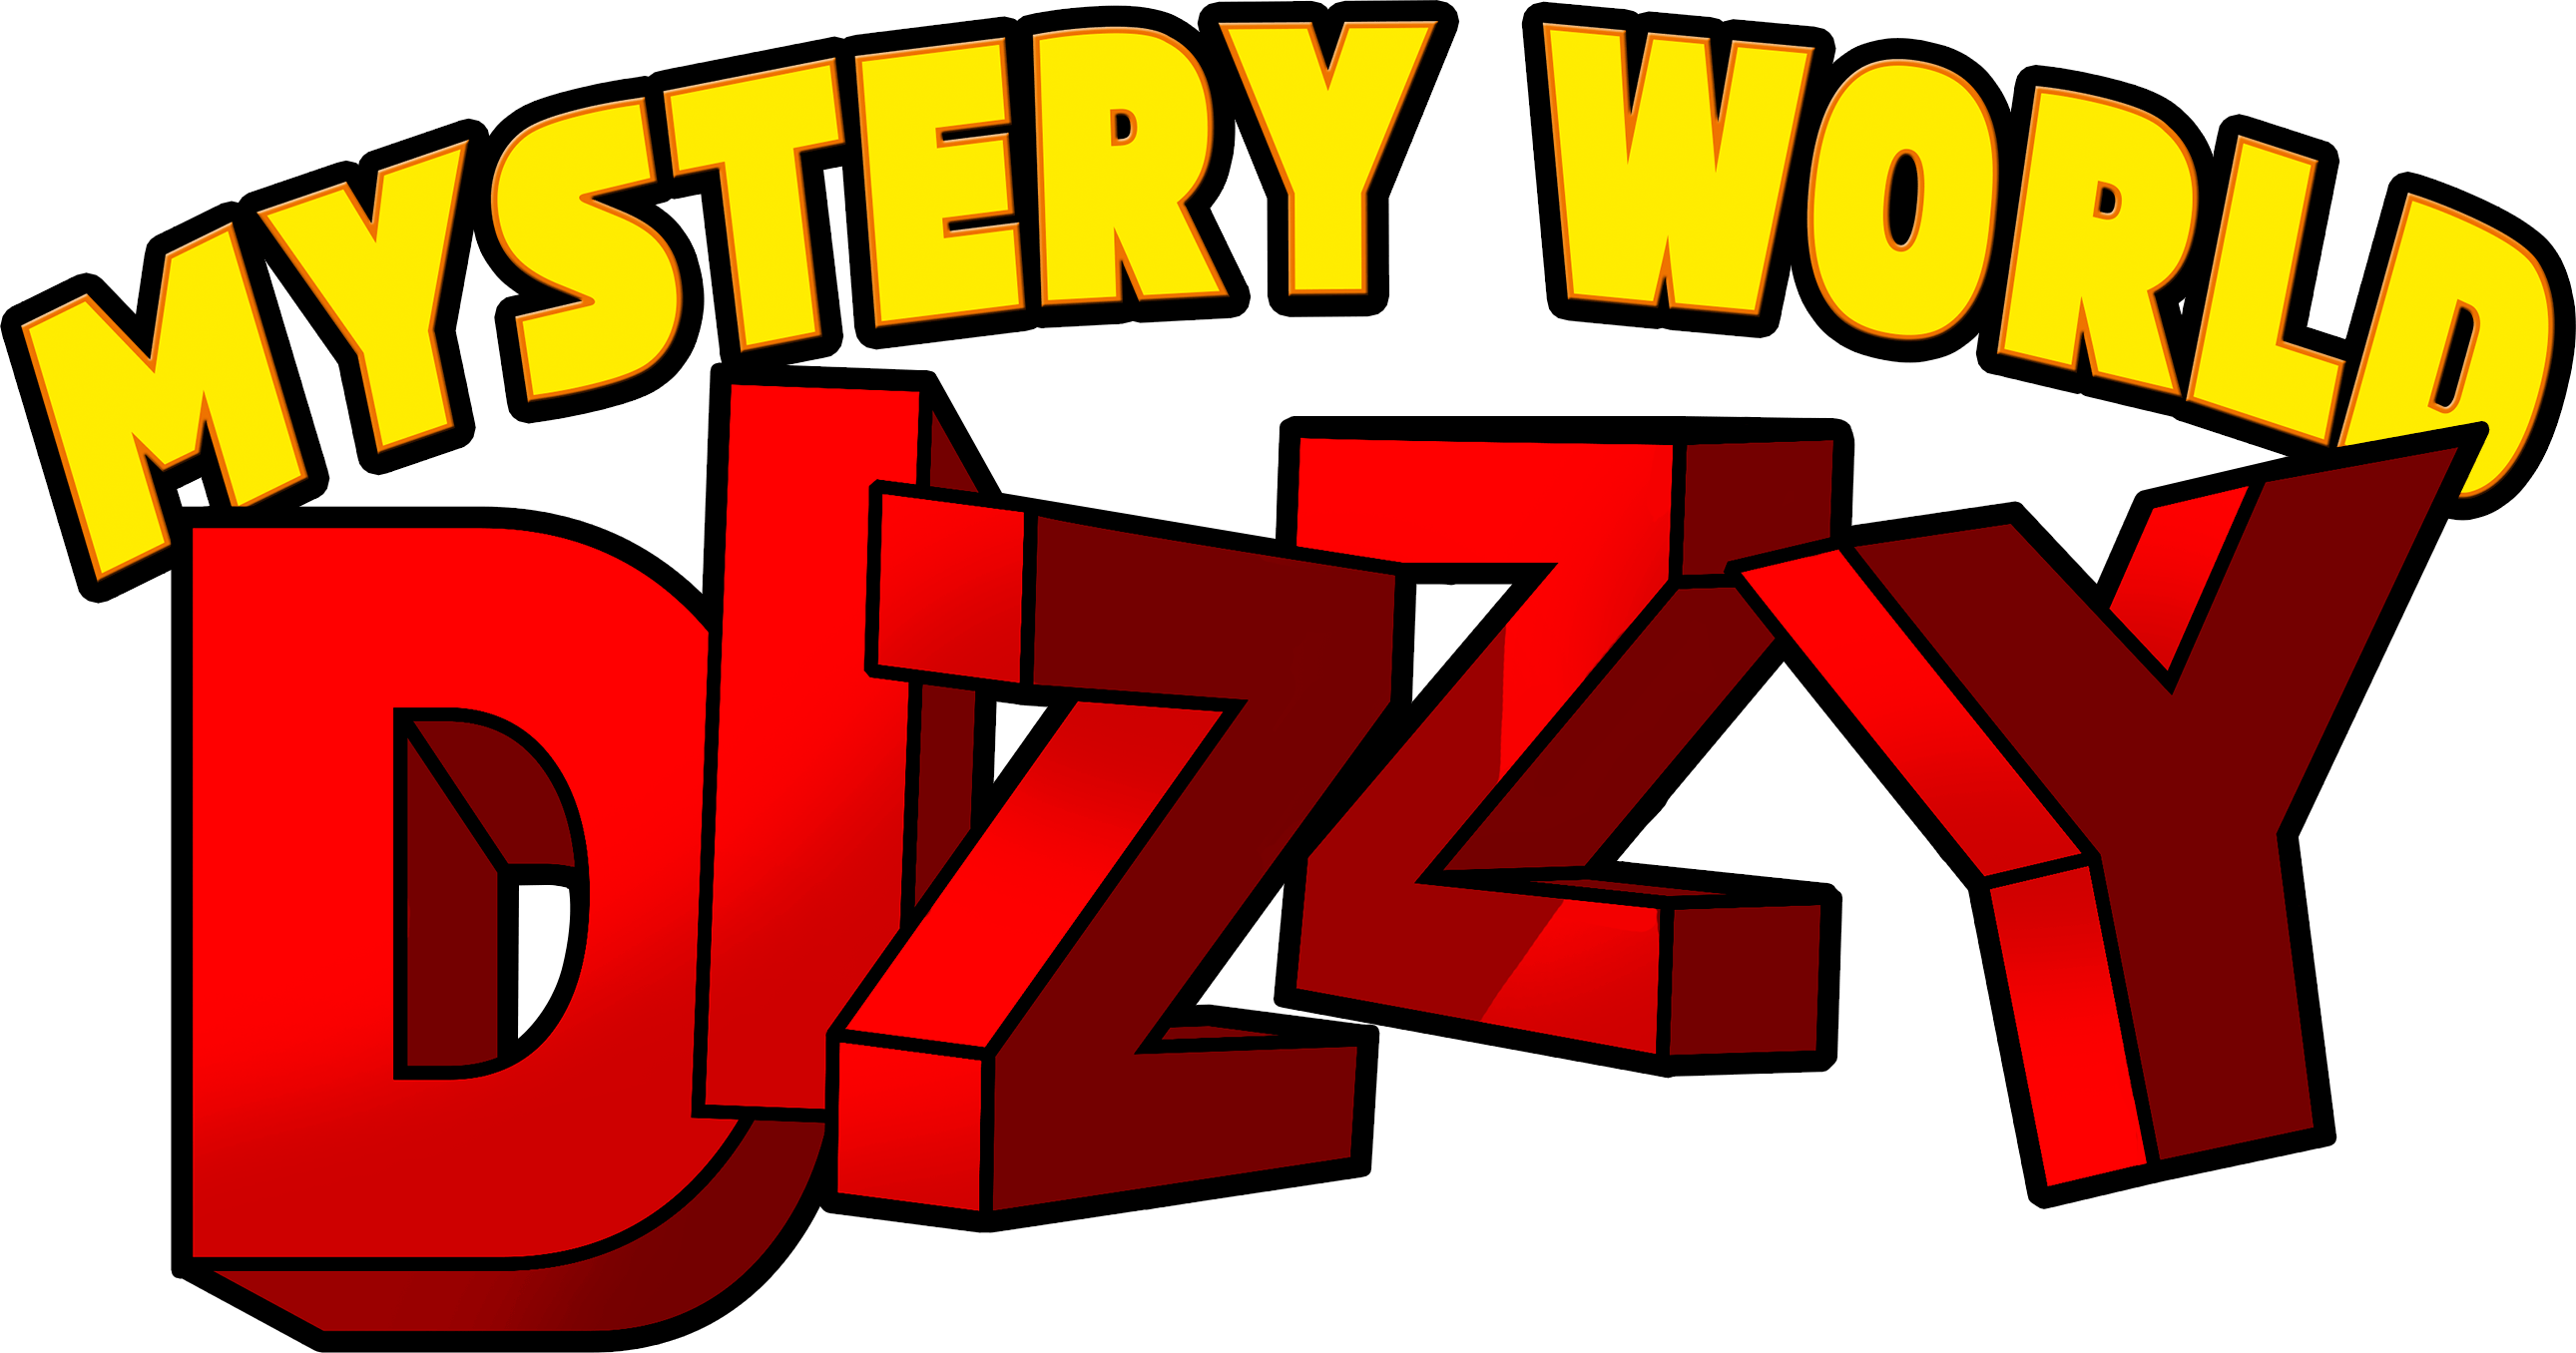 Dizzy Logo - Mystery World Dizzy (www.nesworld.com)